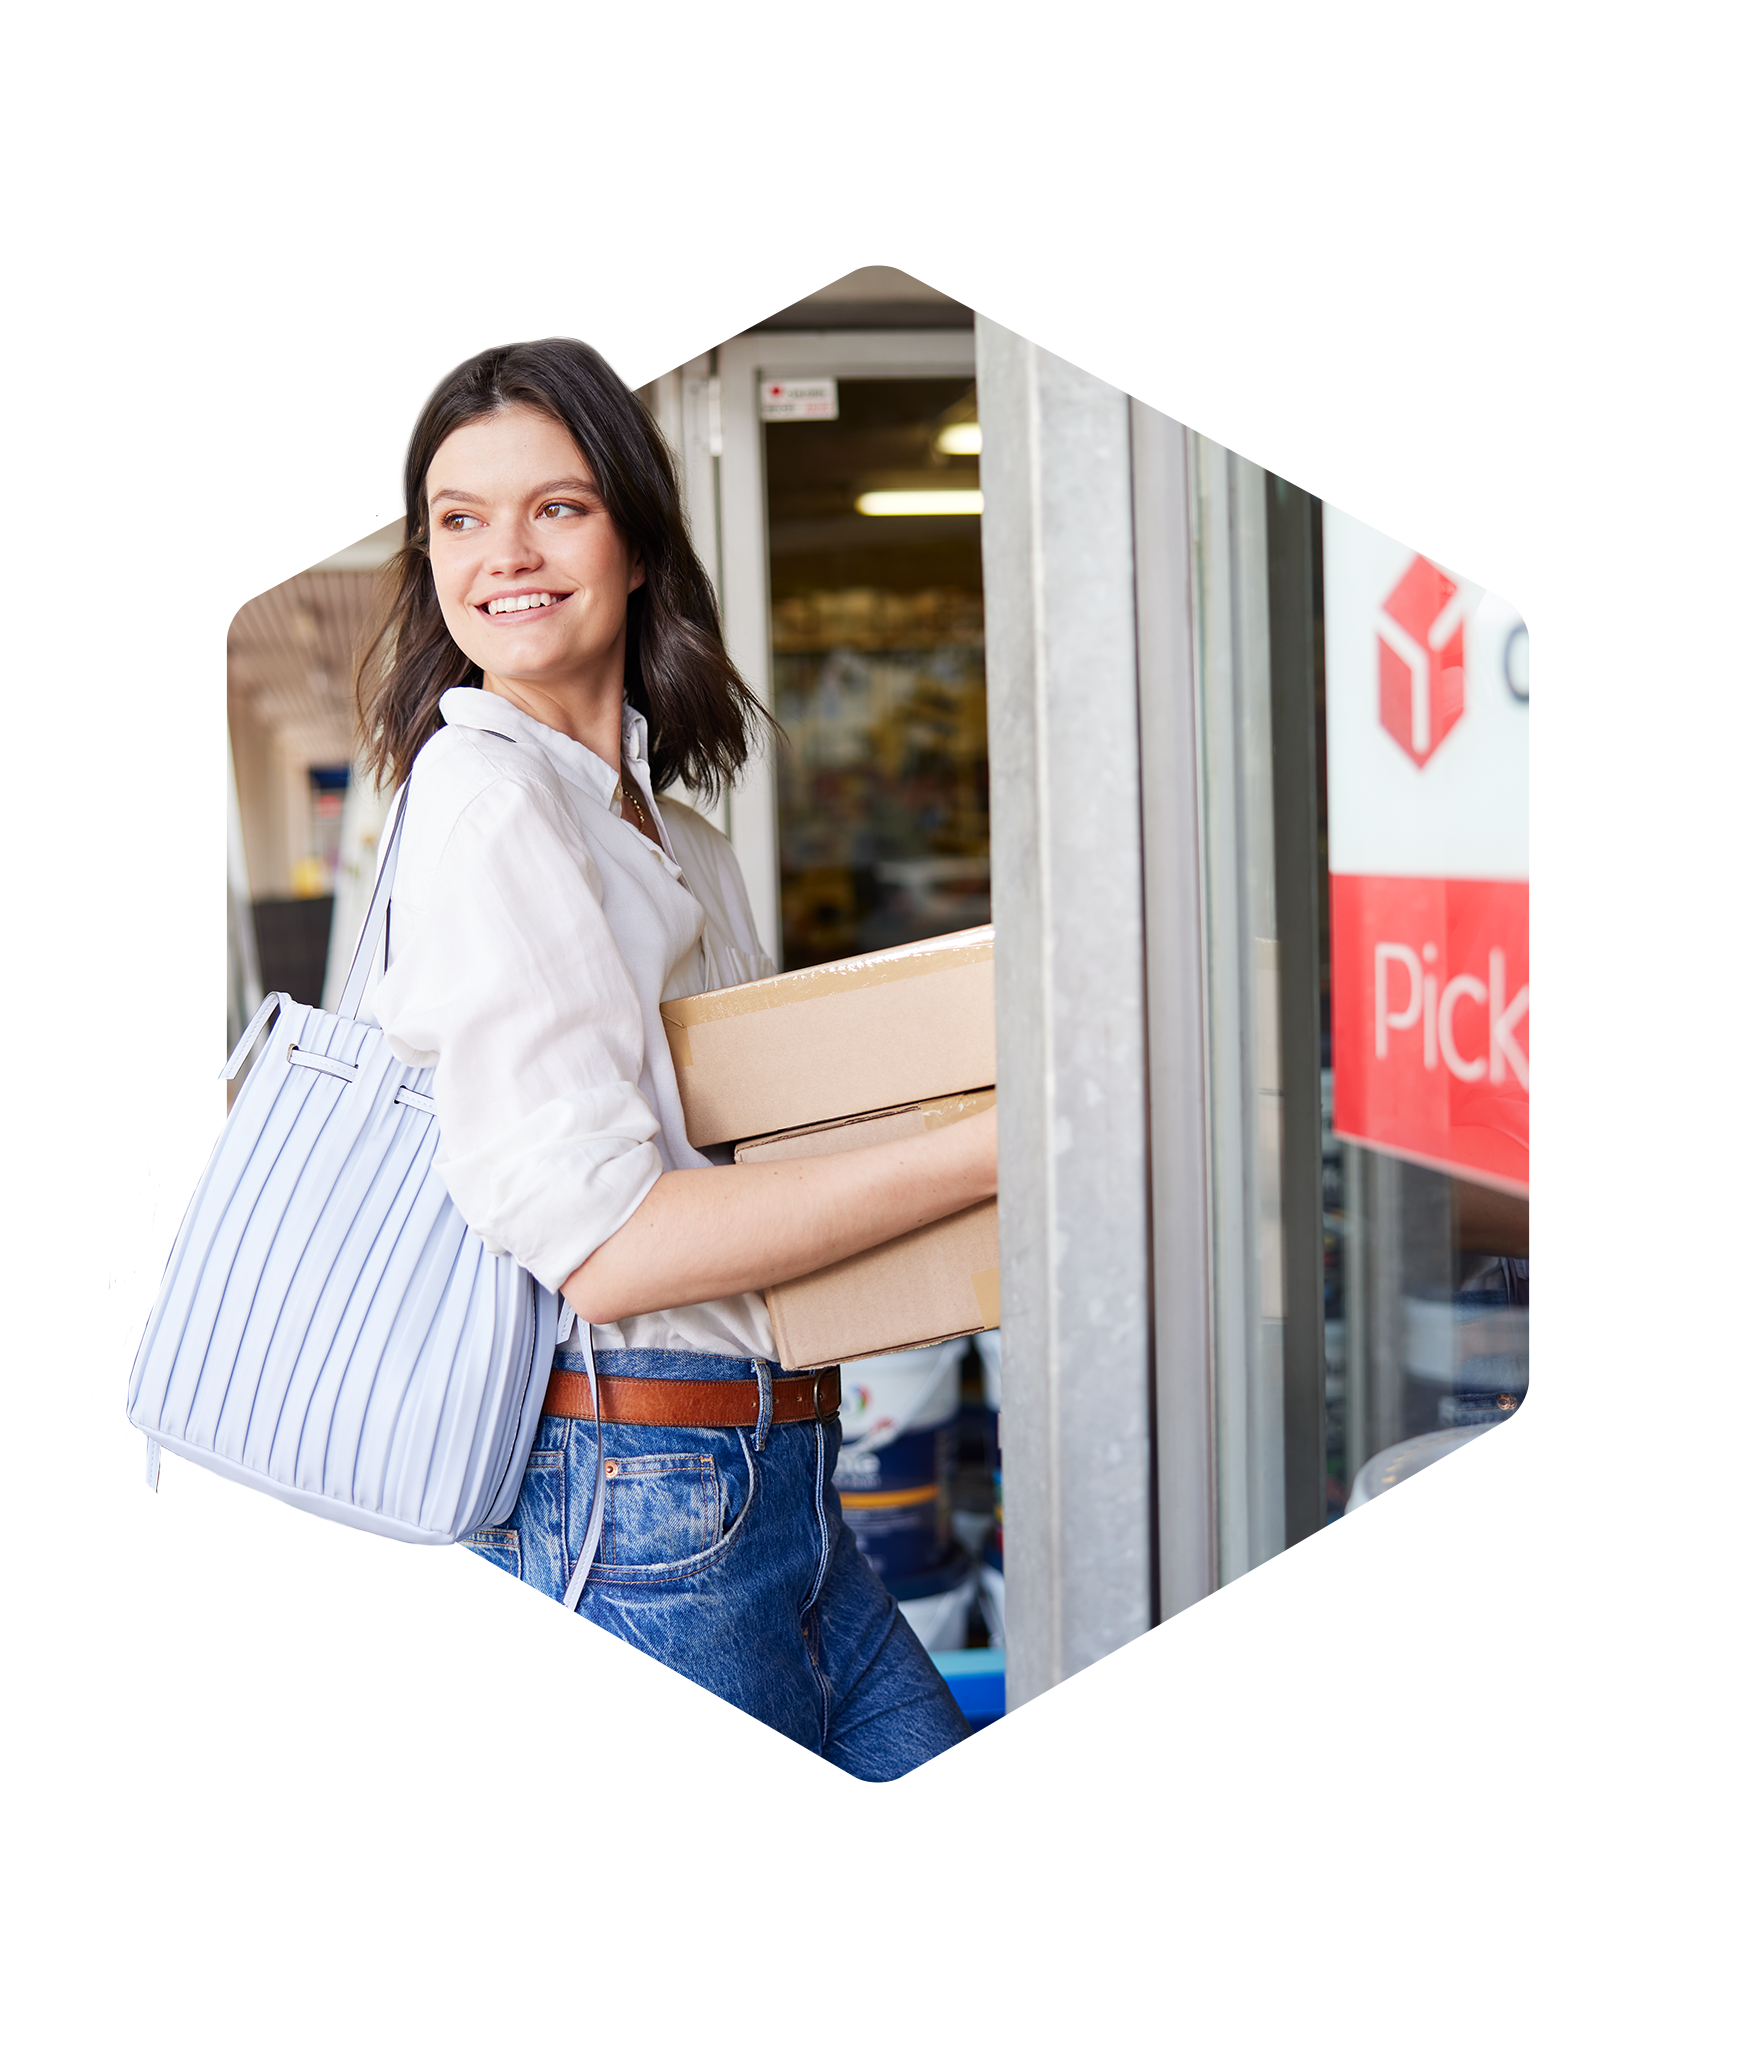 Customer-entering-Pickup-parcelshop.png